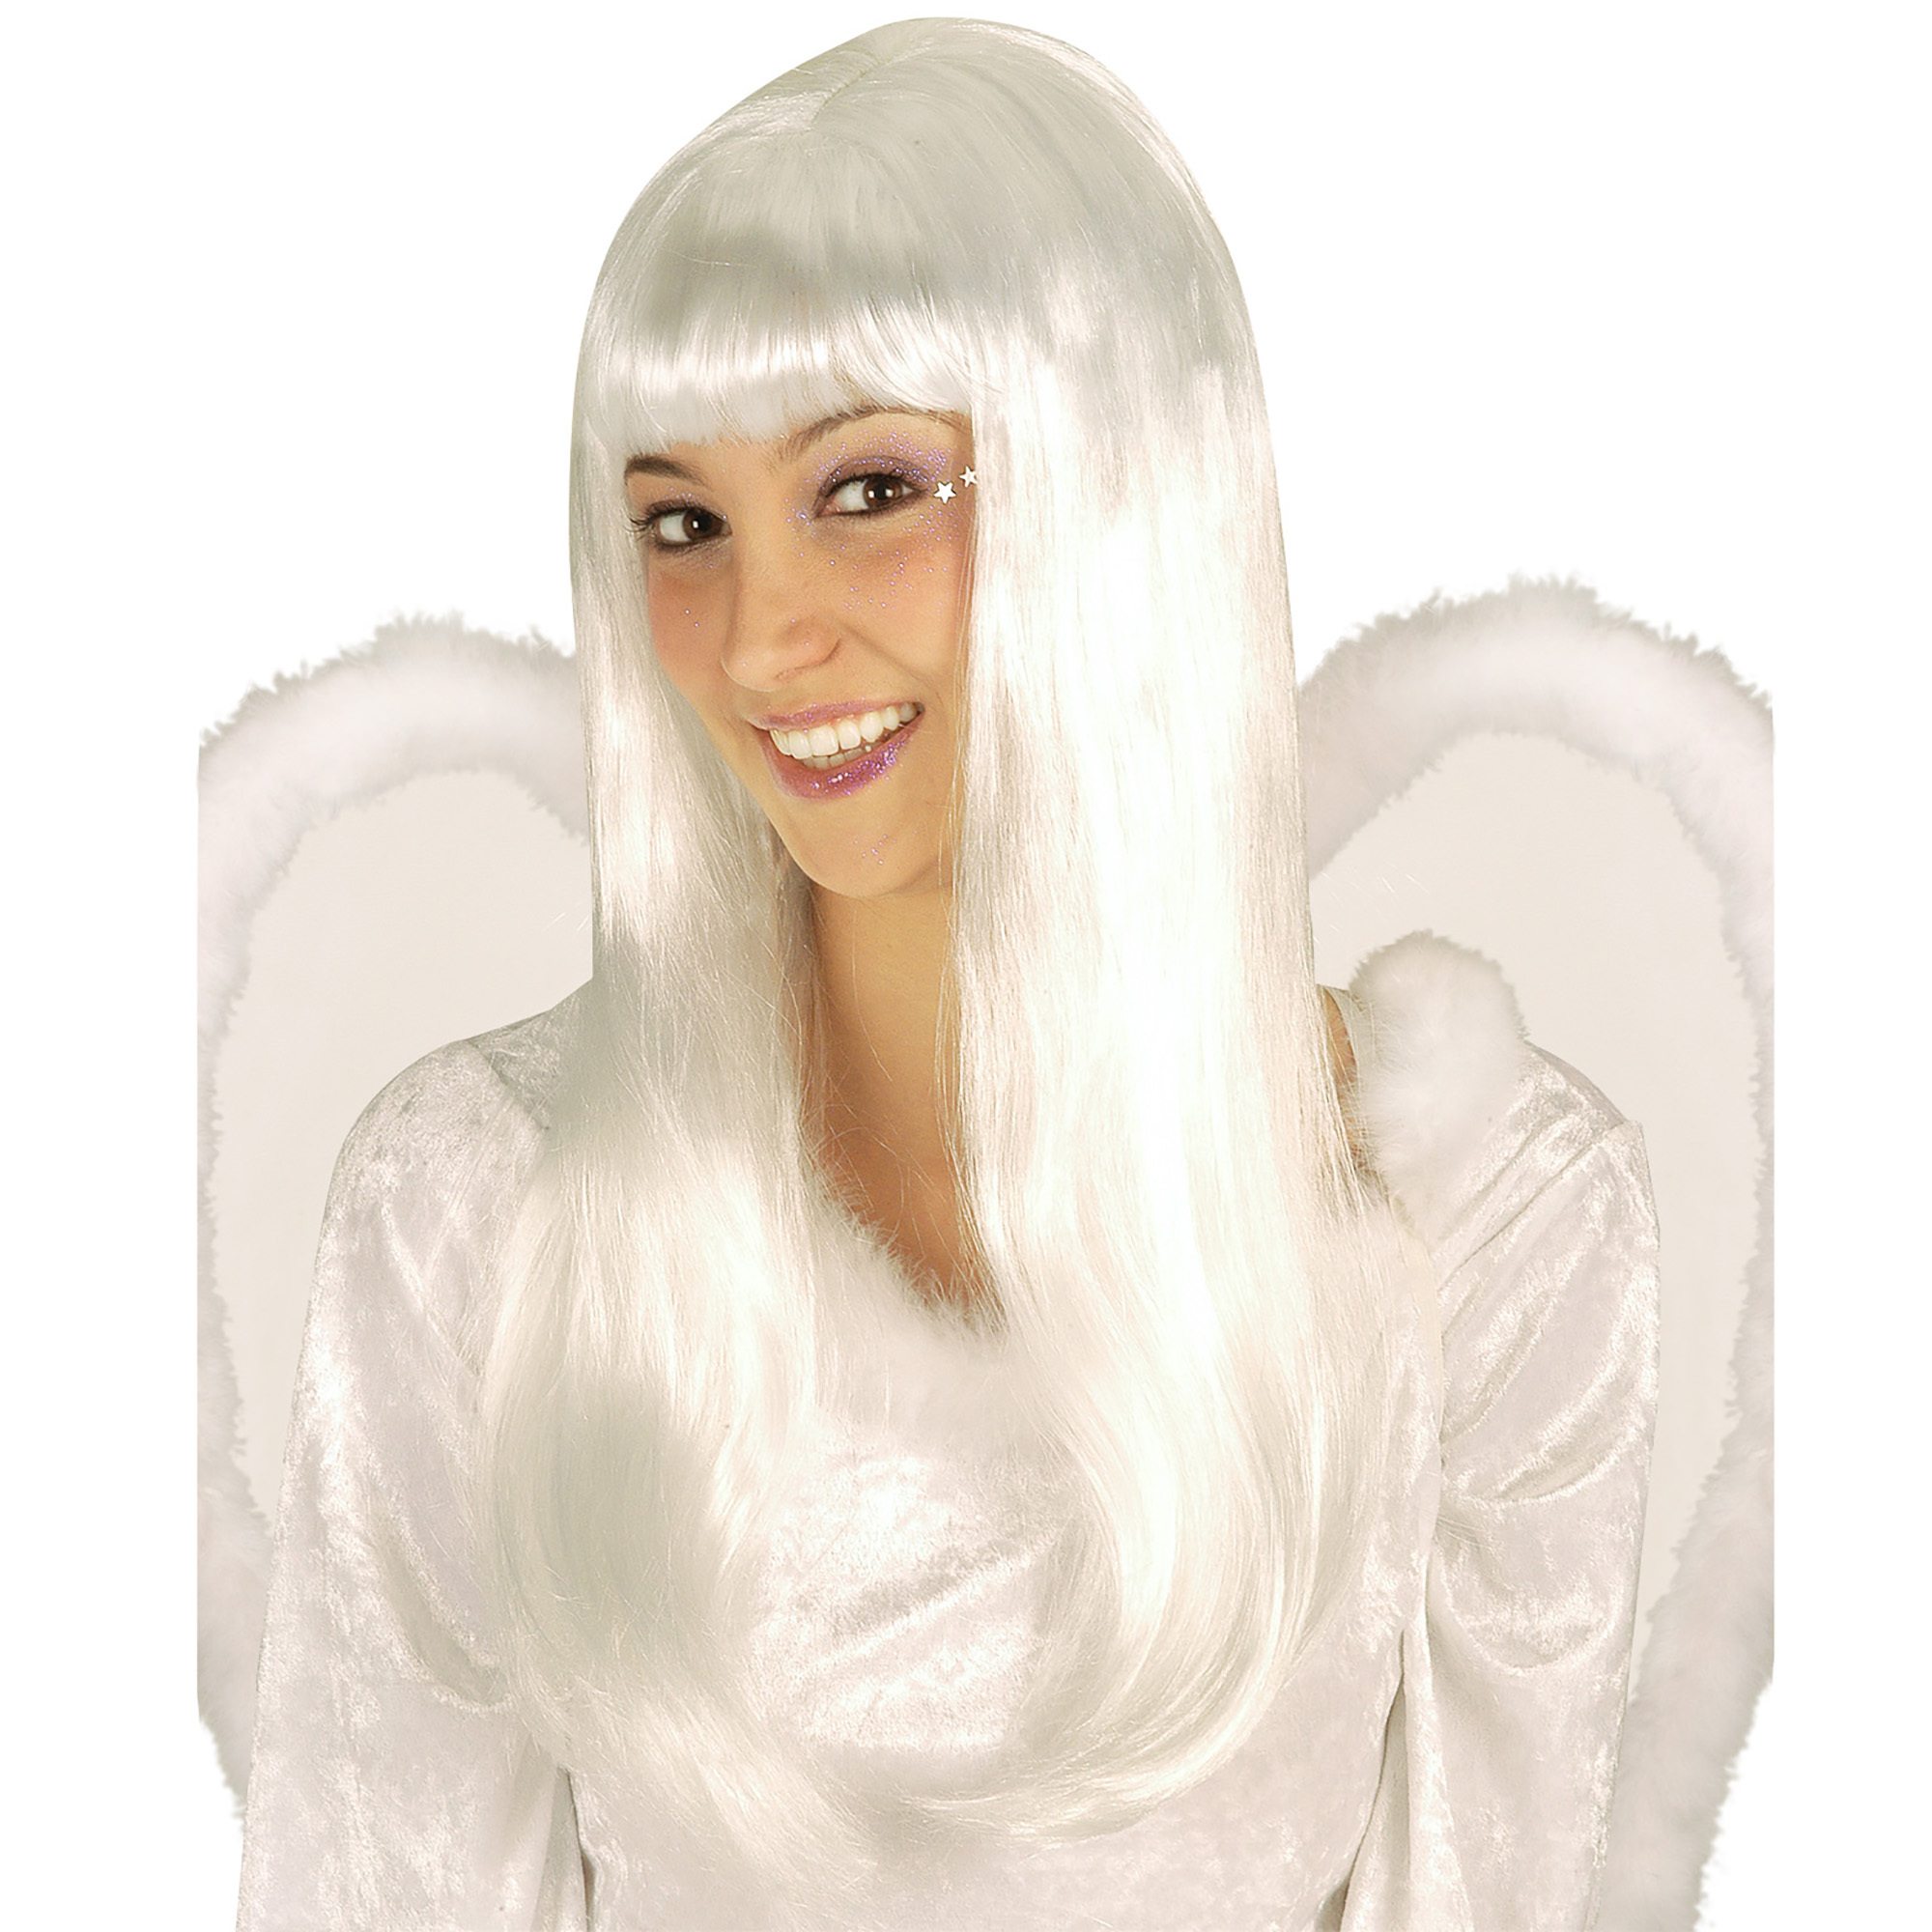 pruik engel spier wit lang haar